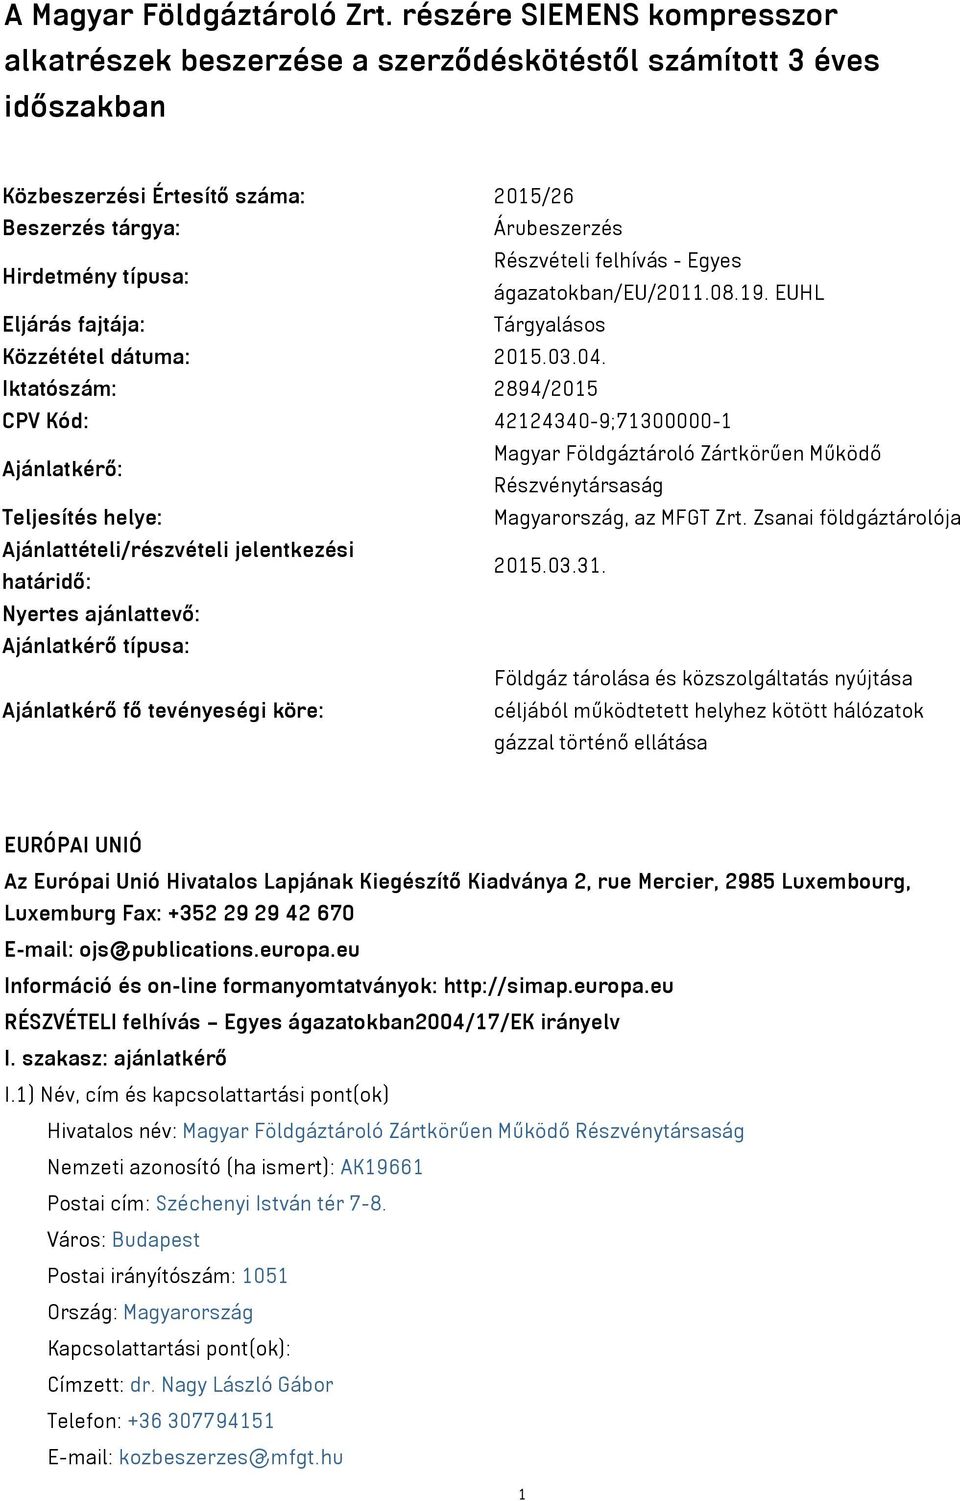 felhívás - Egyes ágazatokban/eu/2011.08.19. EUHL Eljárás fajtája: Tárgyalásos Közzététel dátuma: 2015.03.04.